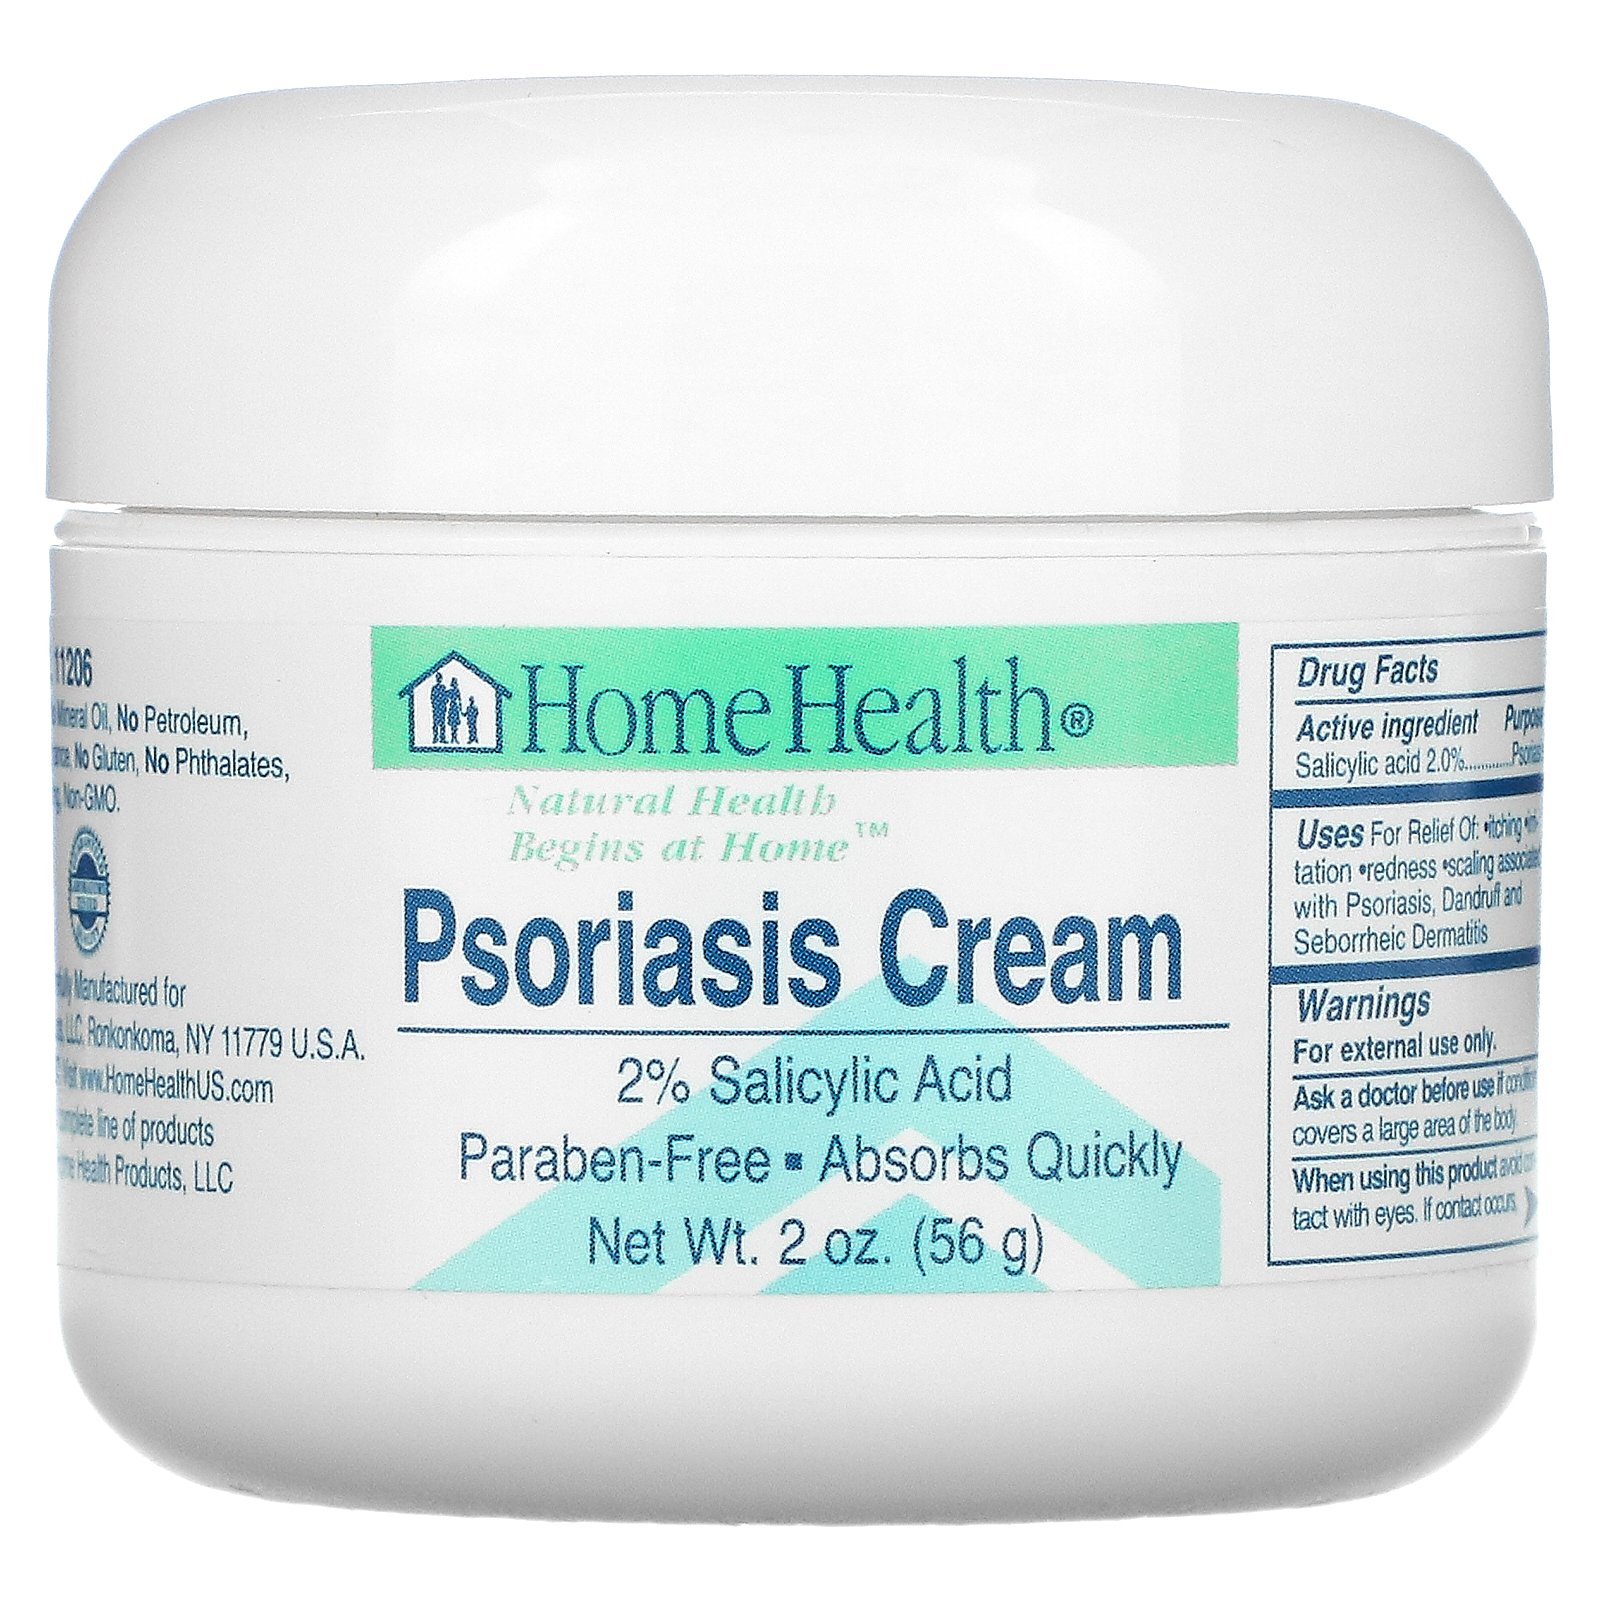 home health psoriasis cream купить минск hogyan lehet eltávolítani az öregedési foltokat pikkelysömörrel